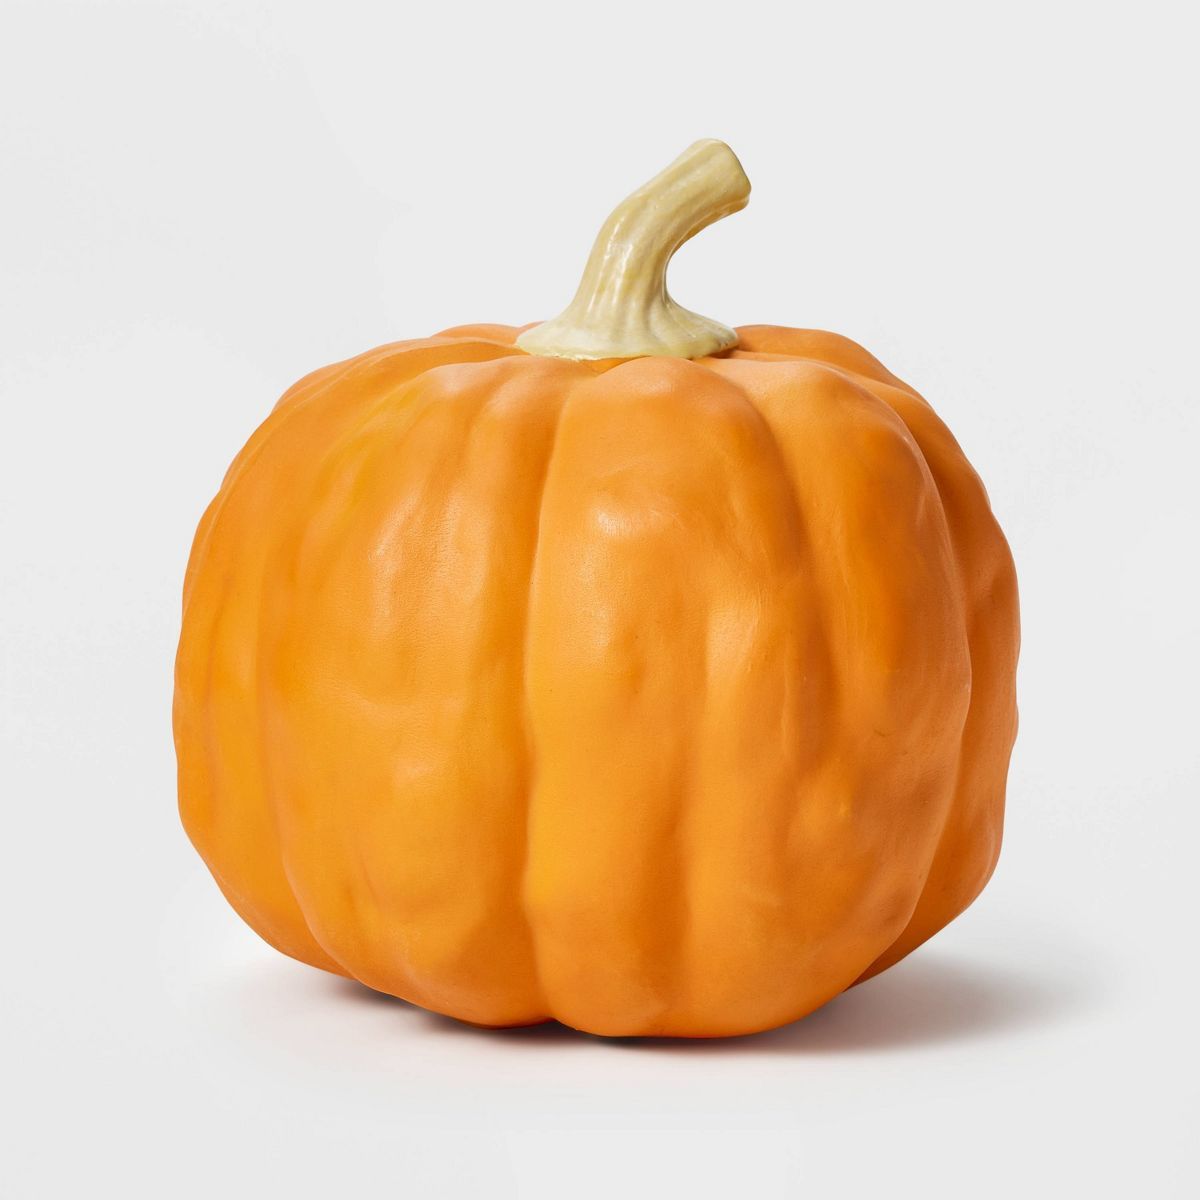 Falloween Small Orange Sheltered Porch Pumpkin Halloween Decorative Sculpture - Hyde & EEK! Bouti... | Target